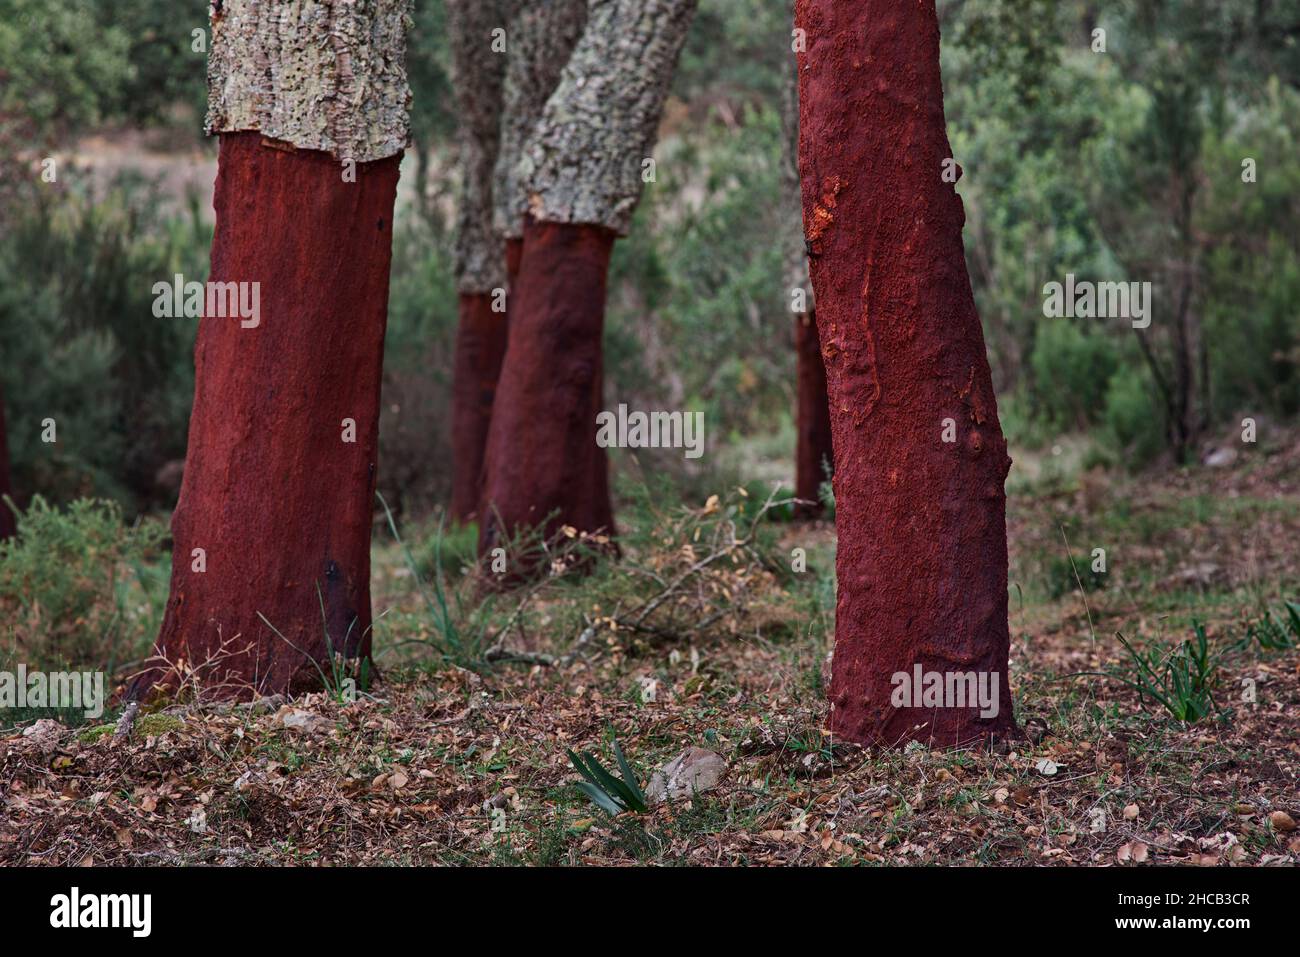 Parco naturale Los Alcornocales a Cadiz. Querce di sughero (Quercus suber) la cui corteccia è stata estratta per la produzione di sughero. Cortes de la Frontera, Andalusia Foto Stock